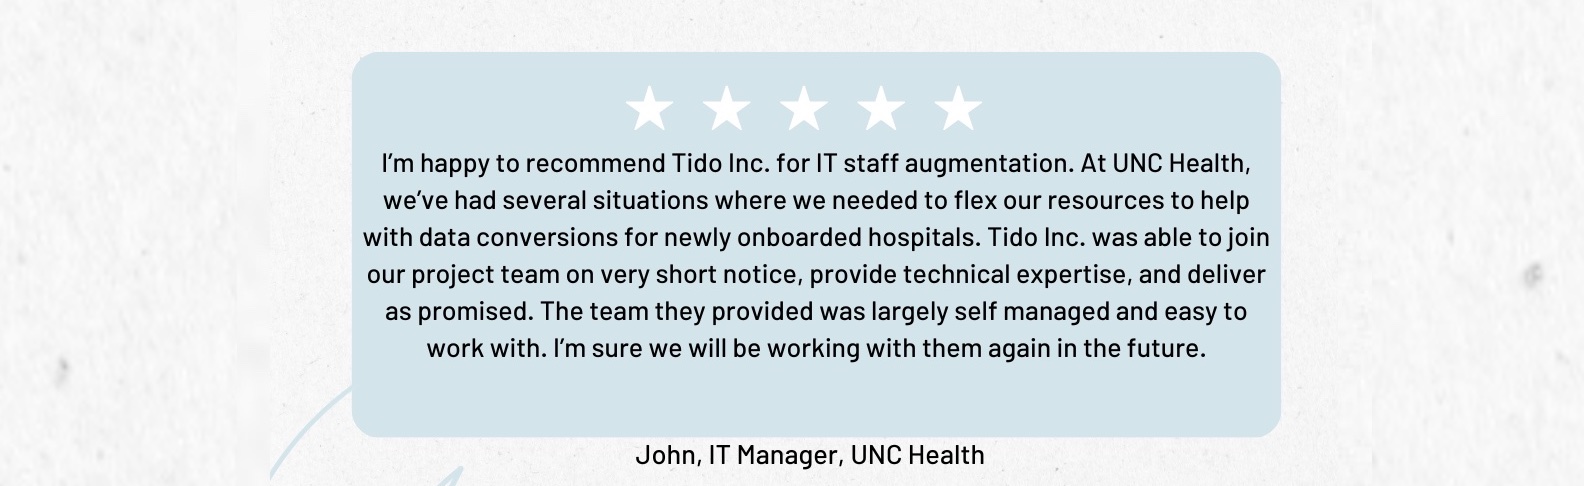 Tido Inc. Client Review